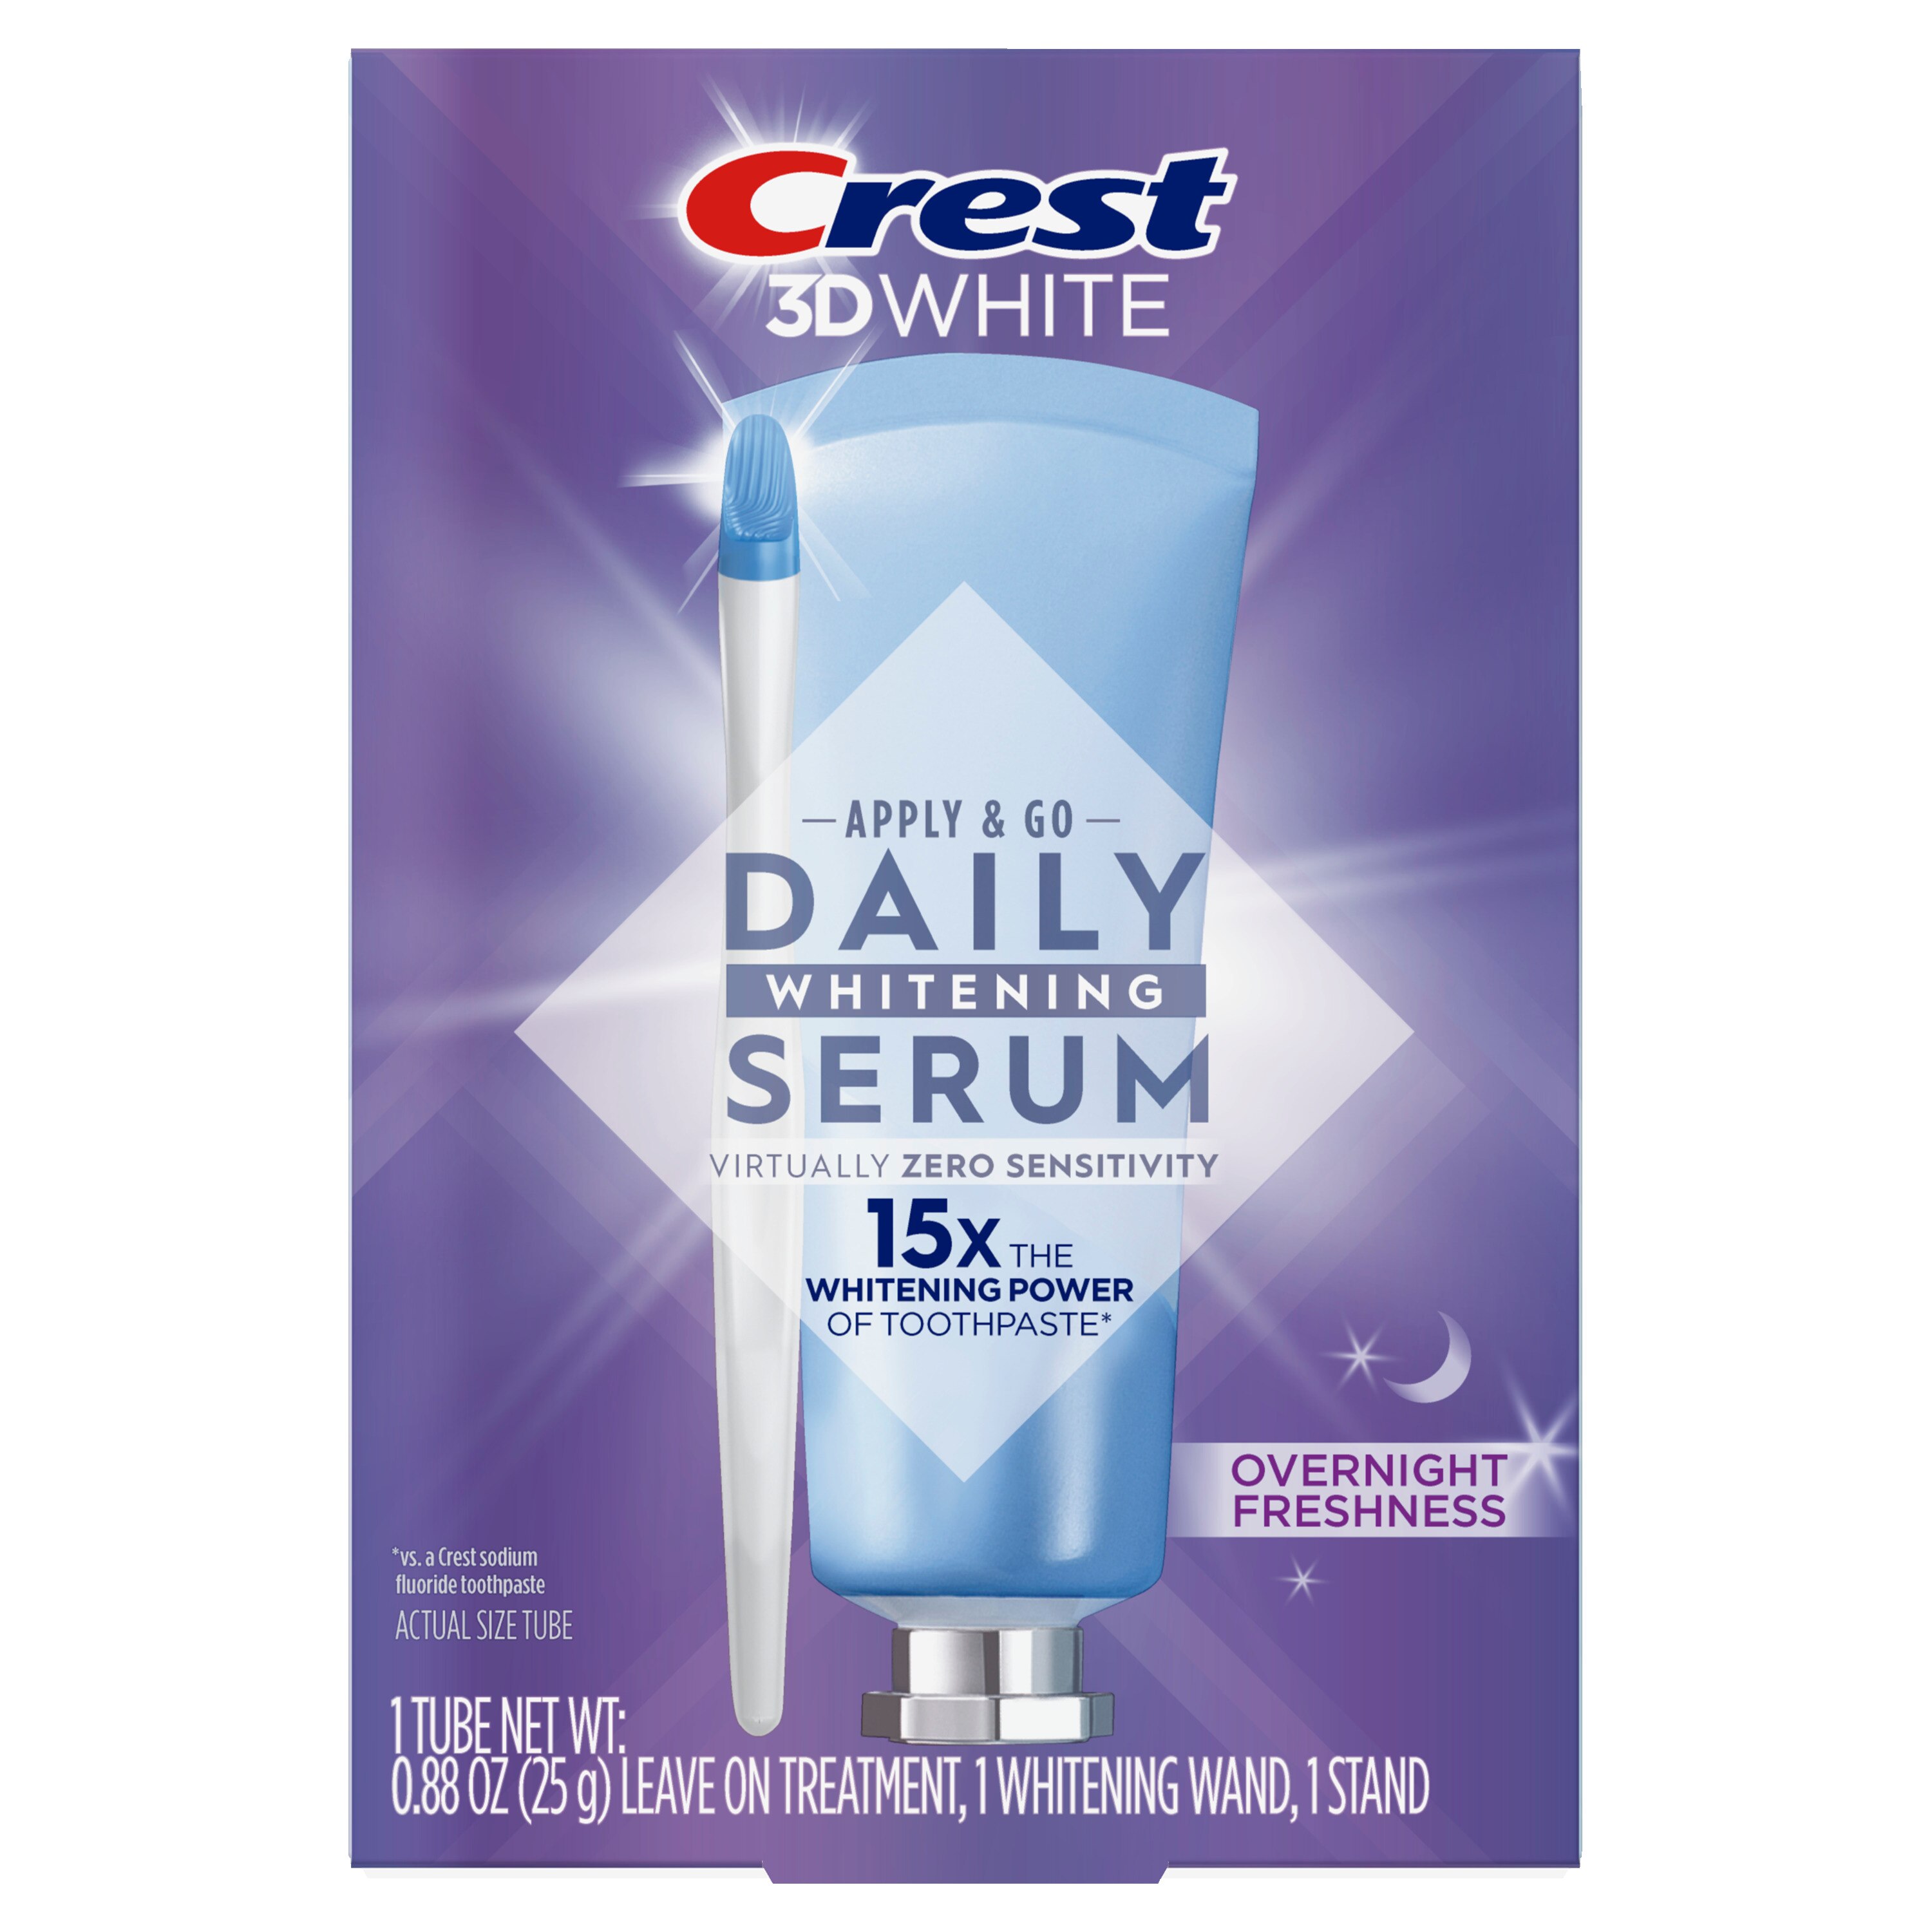 Crest 3D White Daily Whitening Serum Kit, Overnight Freshness - 1 , CVS